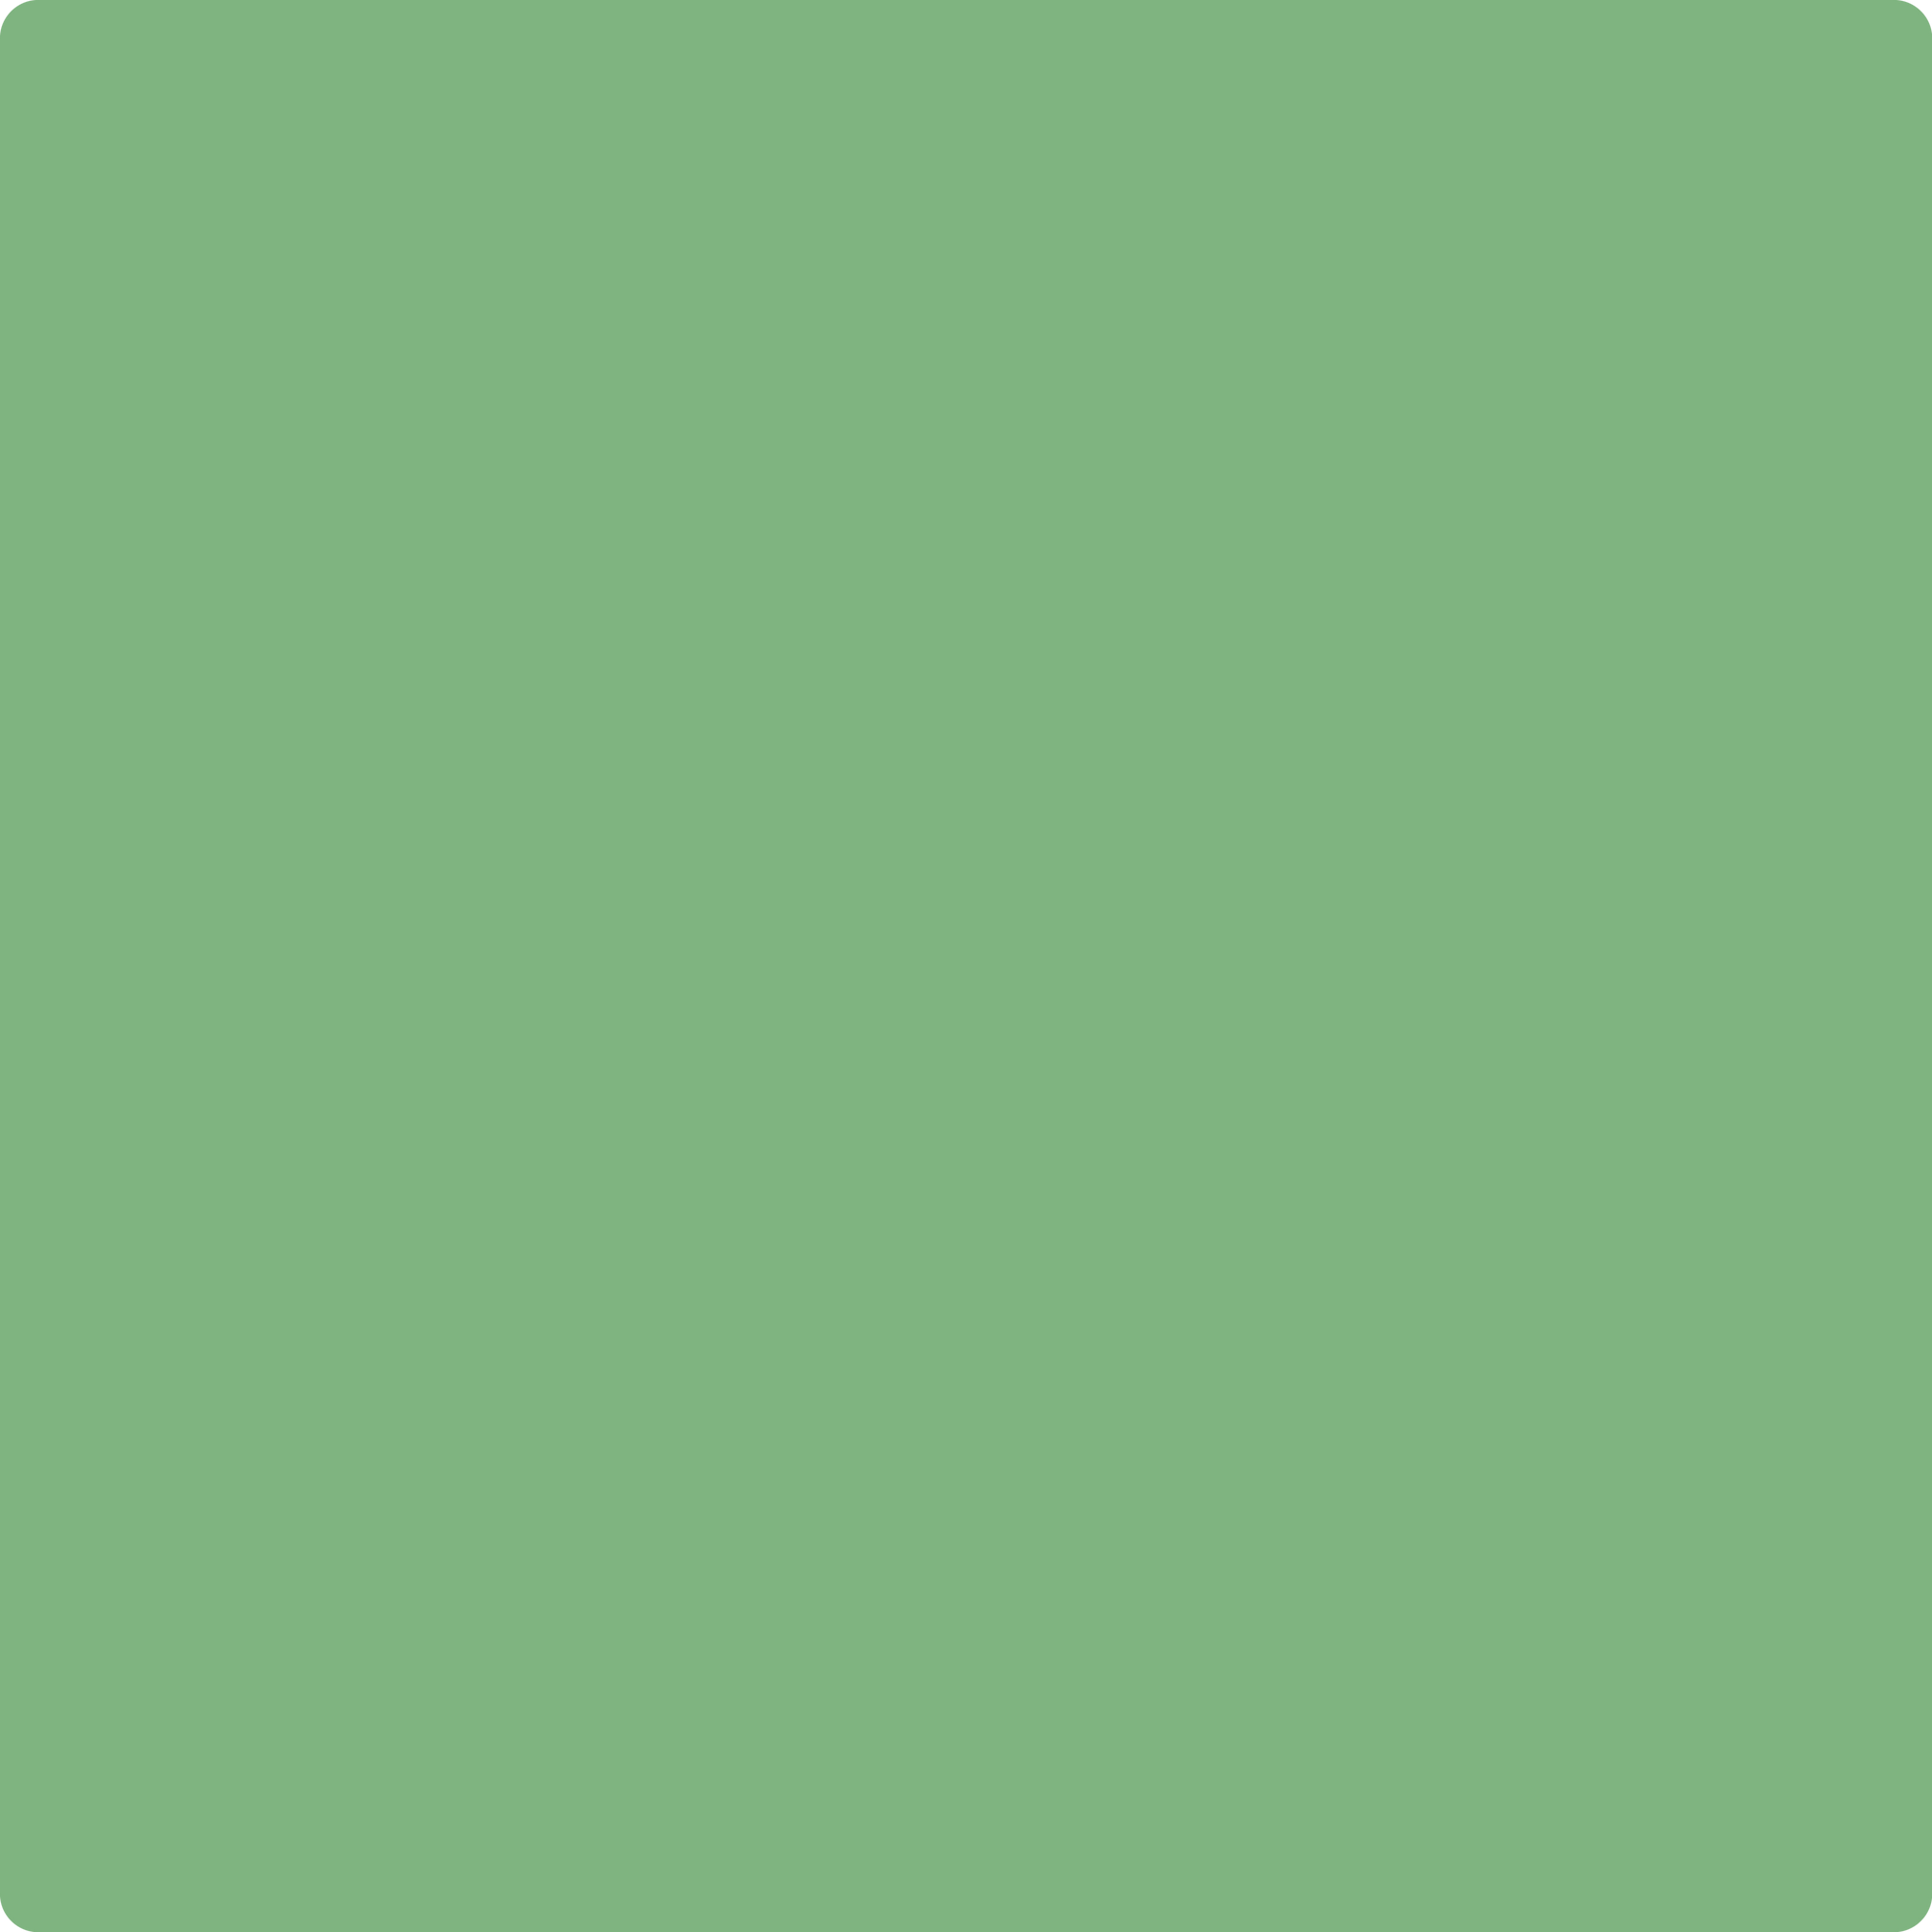 2034-40 Cedar Green a Paint Color by Benjamin Moore